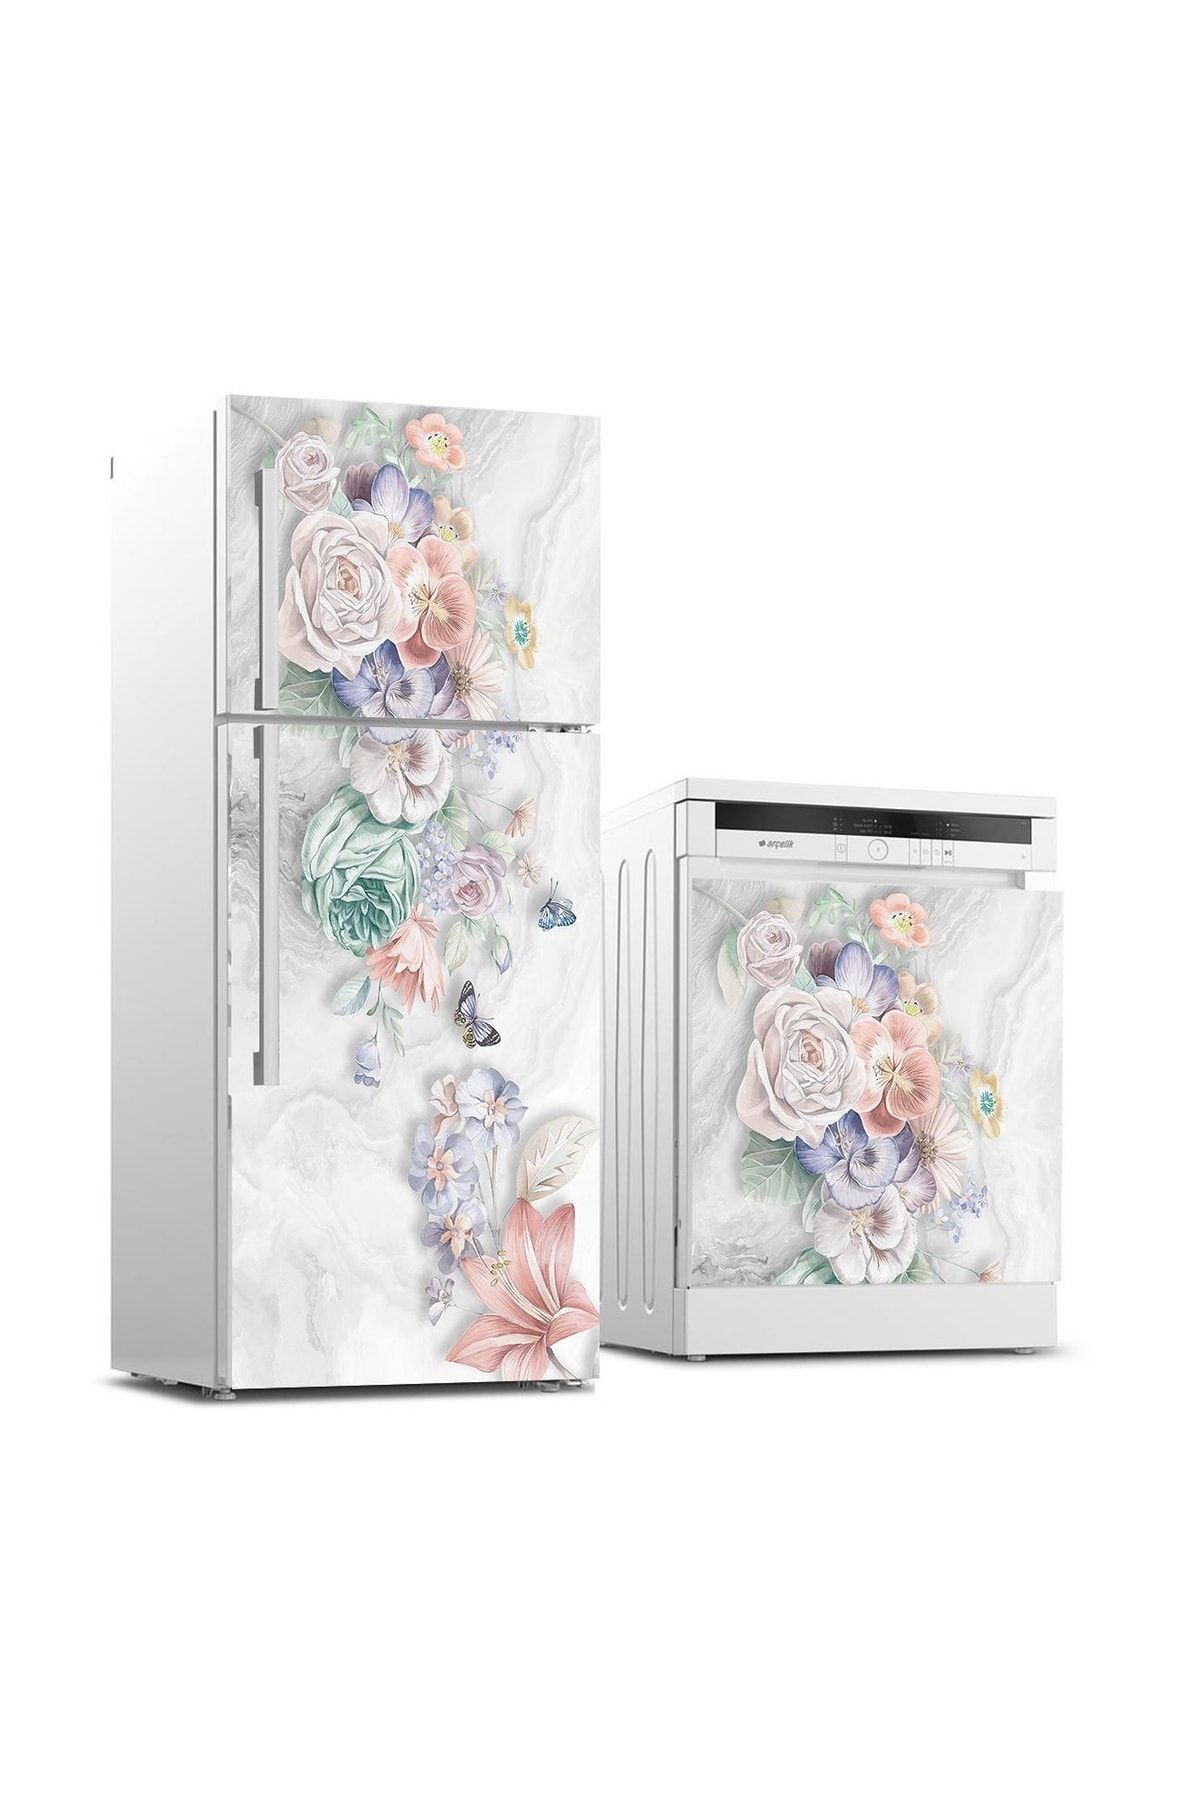 StickerArt Buzdolabı Ve Bulaşık Makinası Beyaz Eşya Sticker Kaplama Çiçekler Ve Kelebek